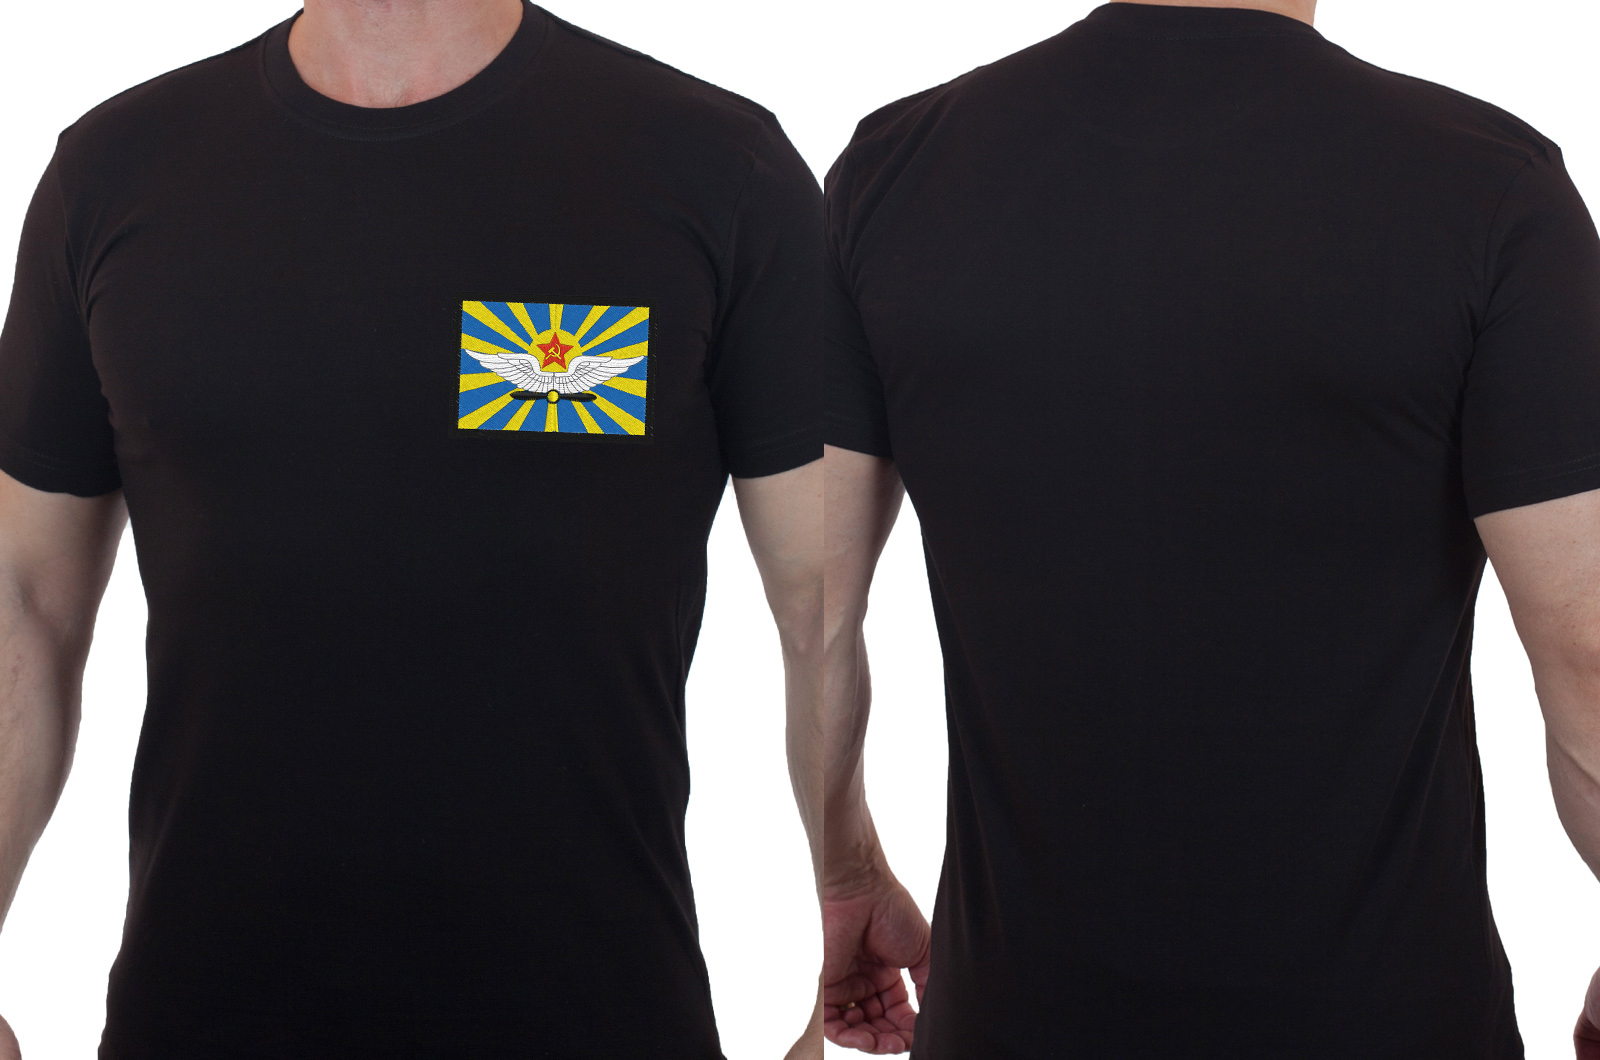 Купить футболку хлопковую с вышитой эмблемой ВВС СССР оптом или в розницу